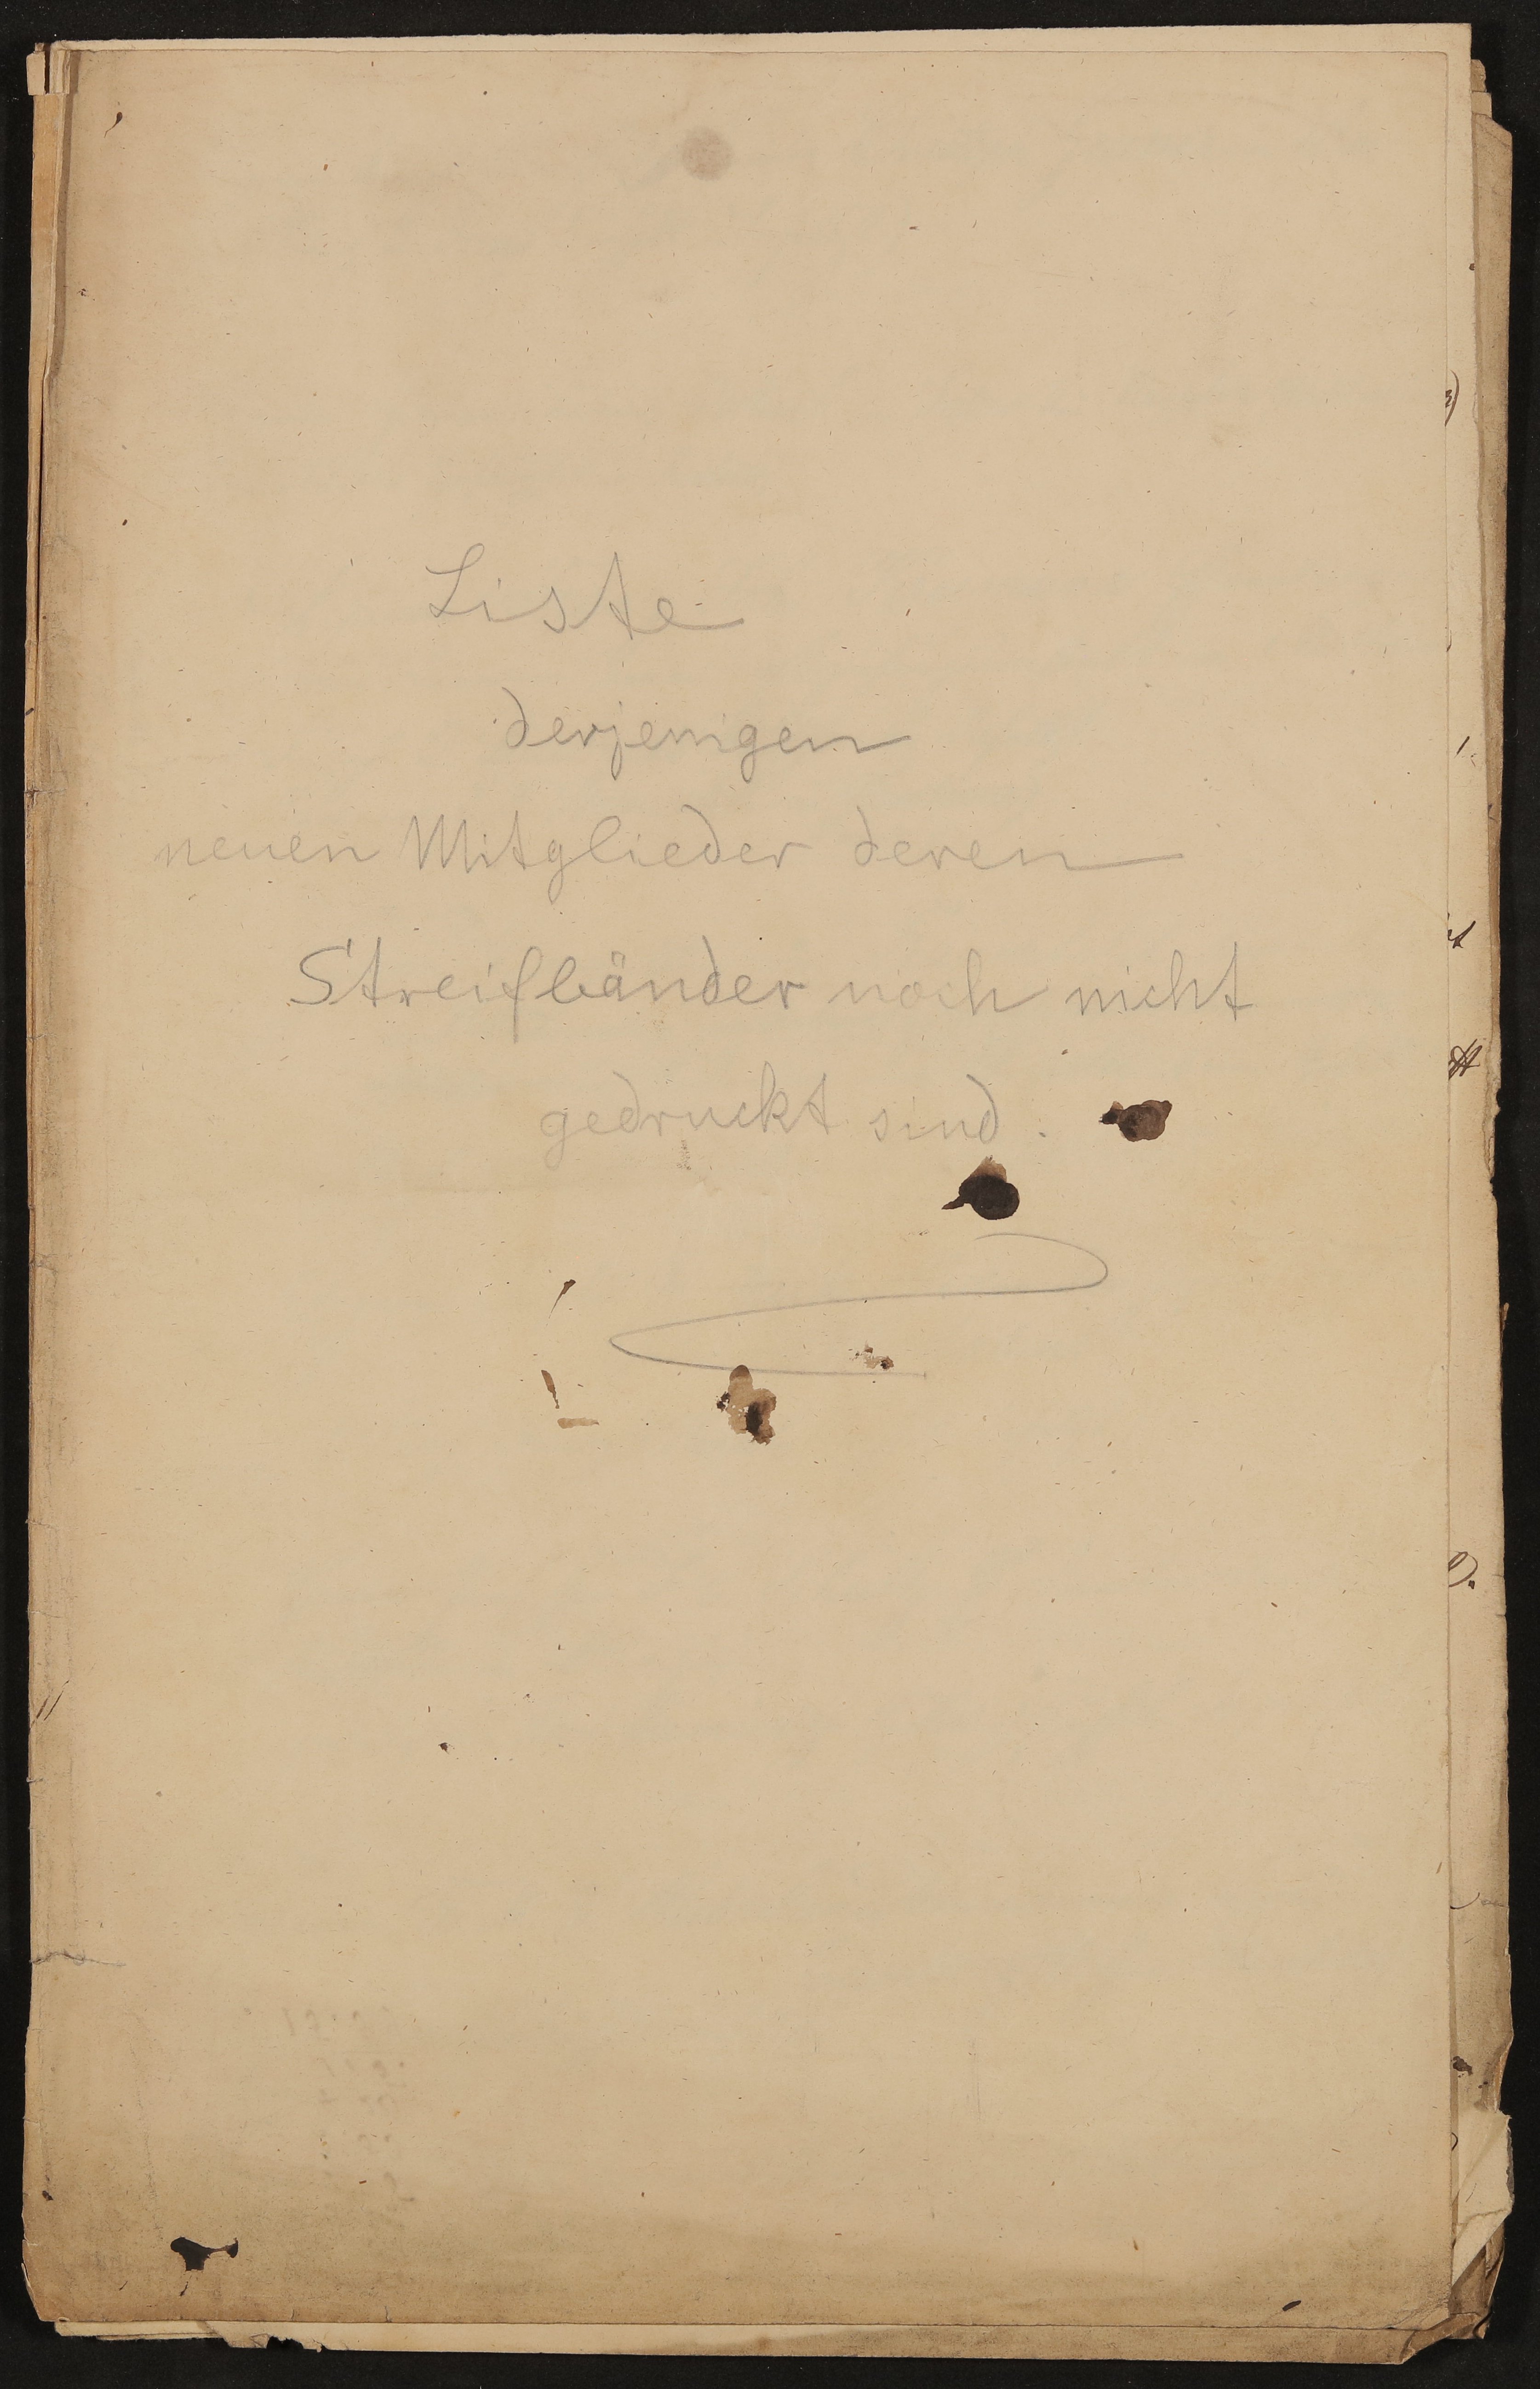 Liste derjenigen neuen Mitglieder des Freien Deutschen Hochstifts deren Streifbänder noch nicht gedruckt sind, um 1863 (Freies Deutsches Hochstift / Frankfurter Goethe-Museum Public Domain Mark)